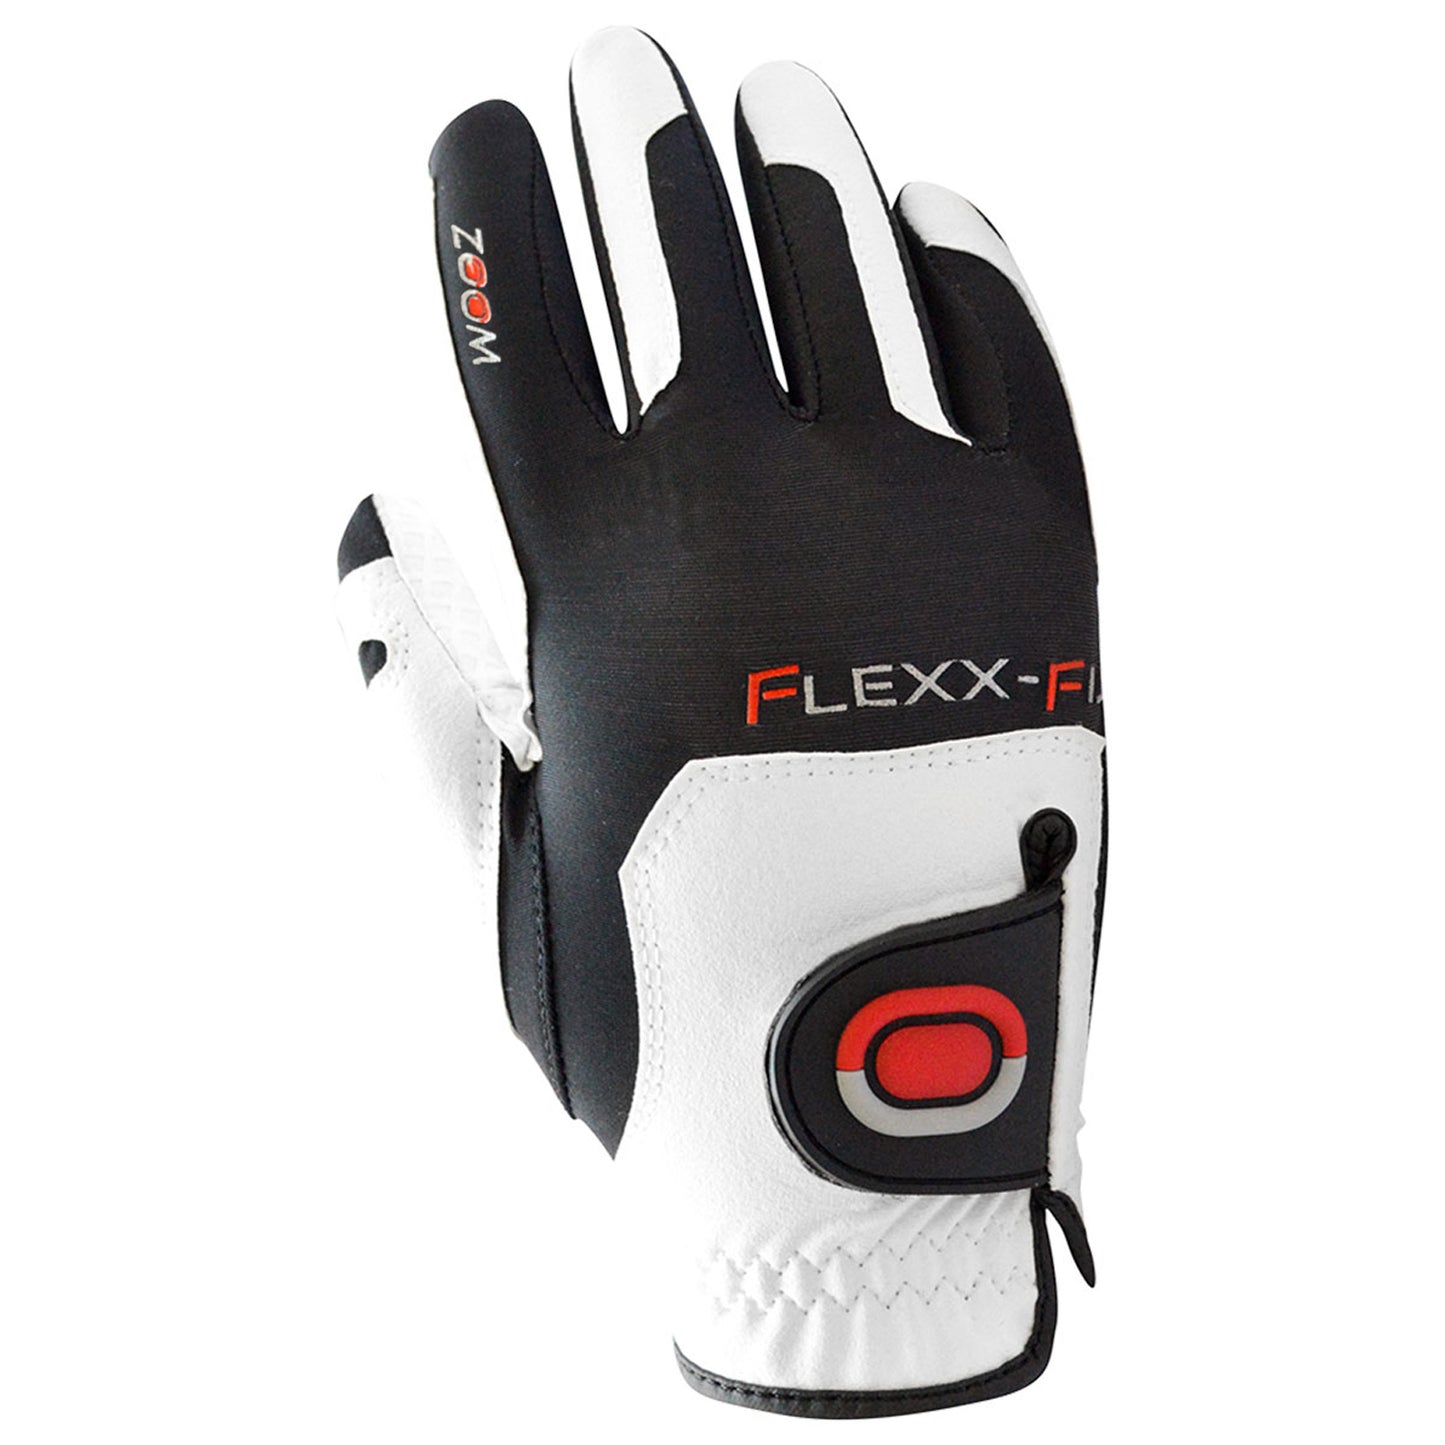 Zoom Ladies Flexx Fit Right Hand GRIP Golf Glove - One Size